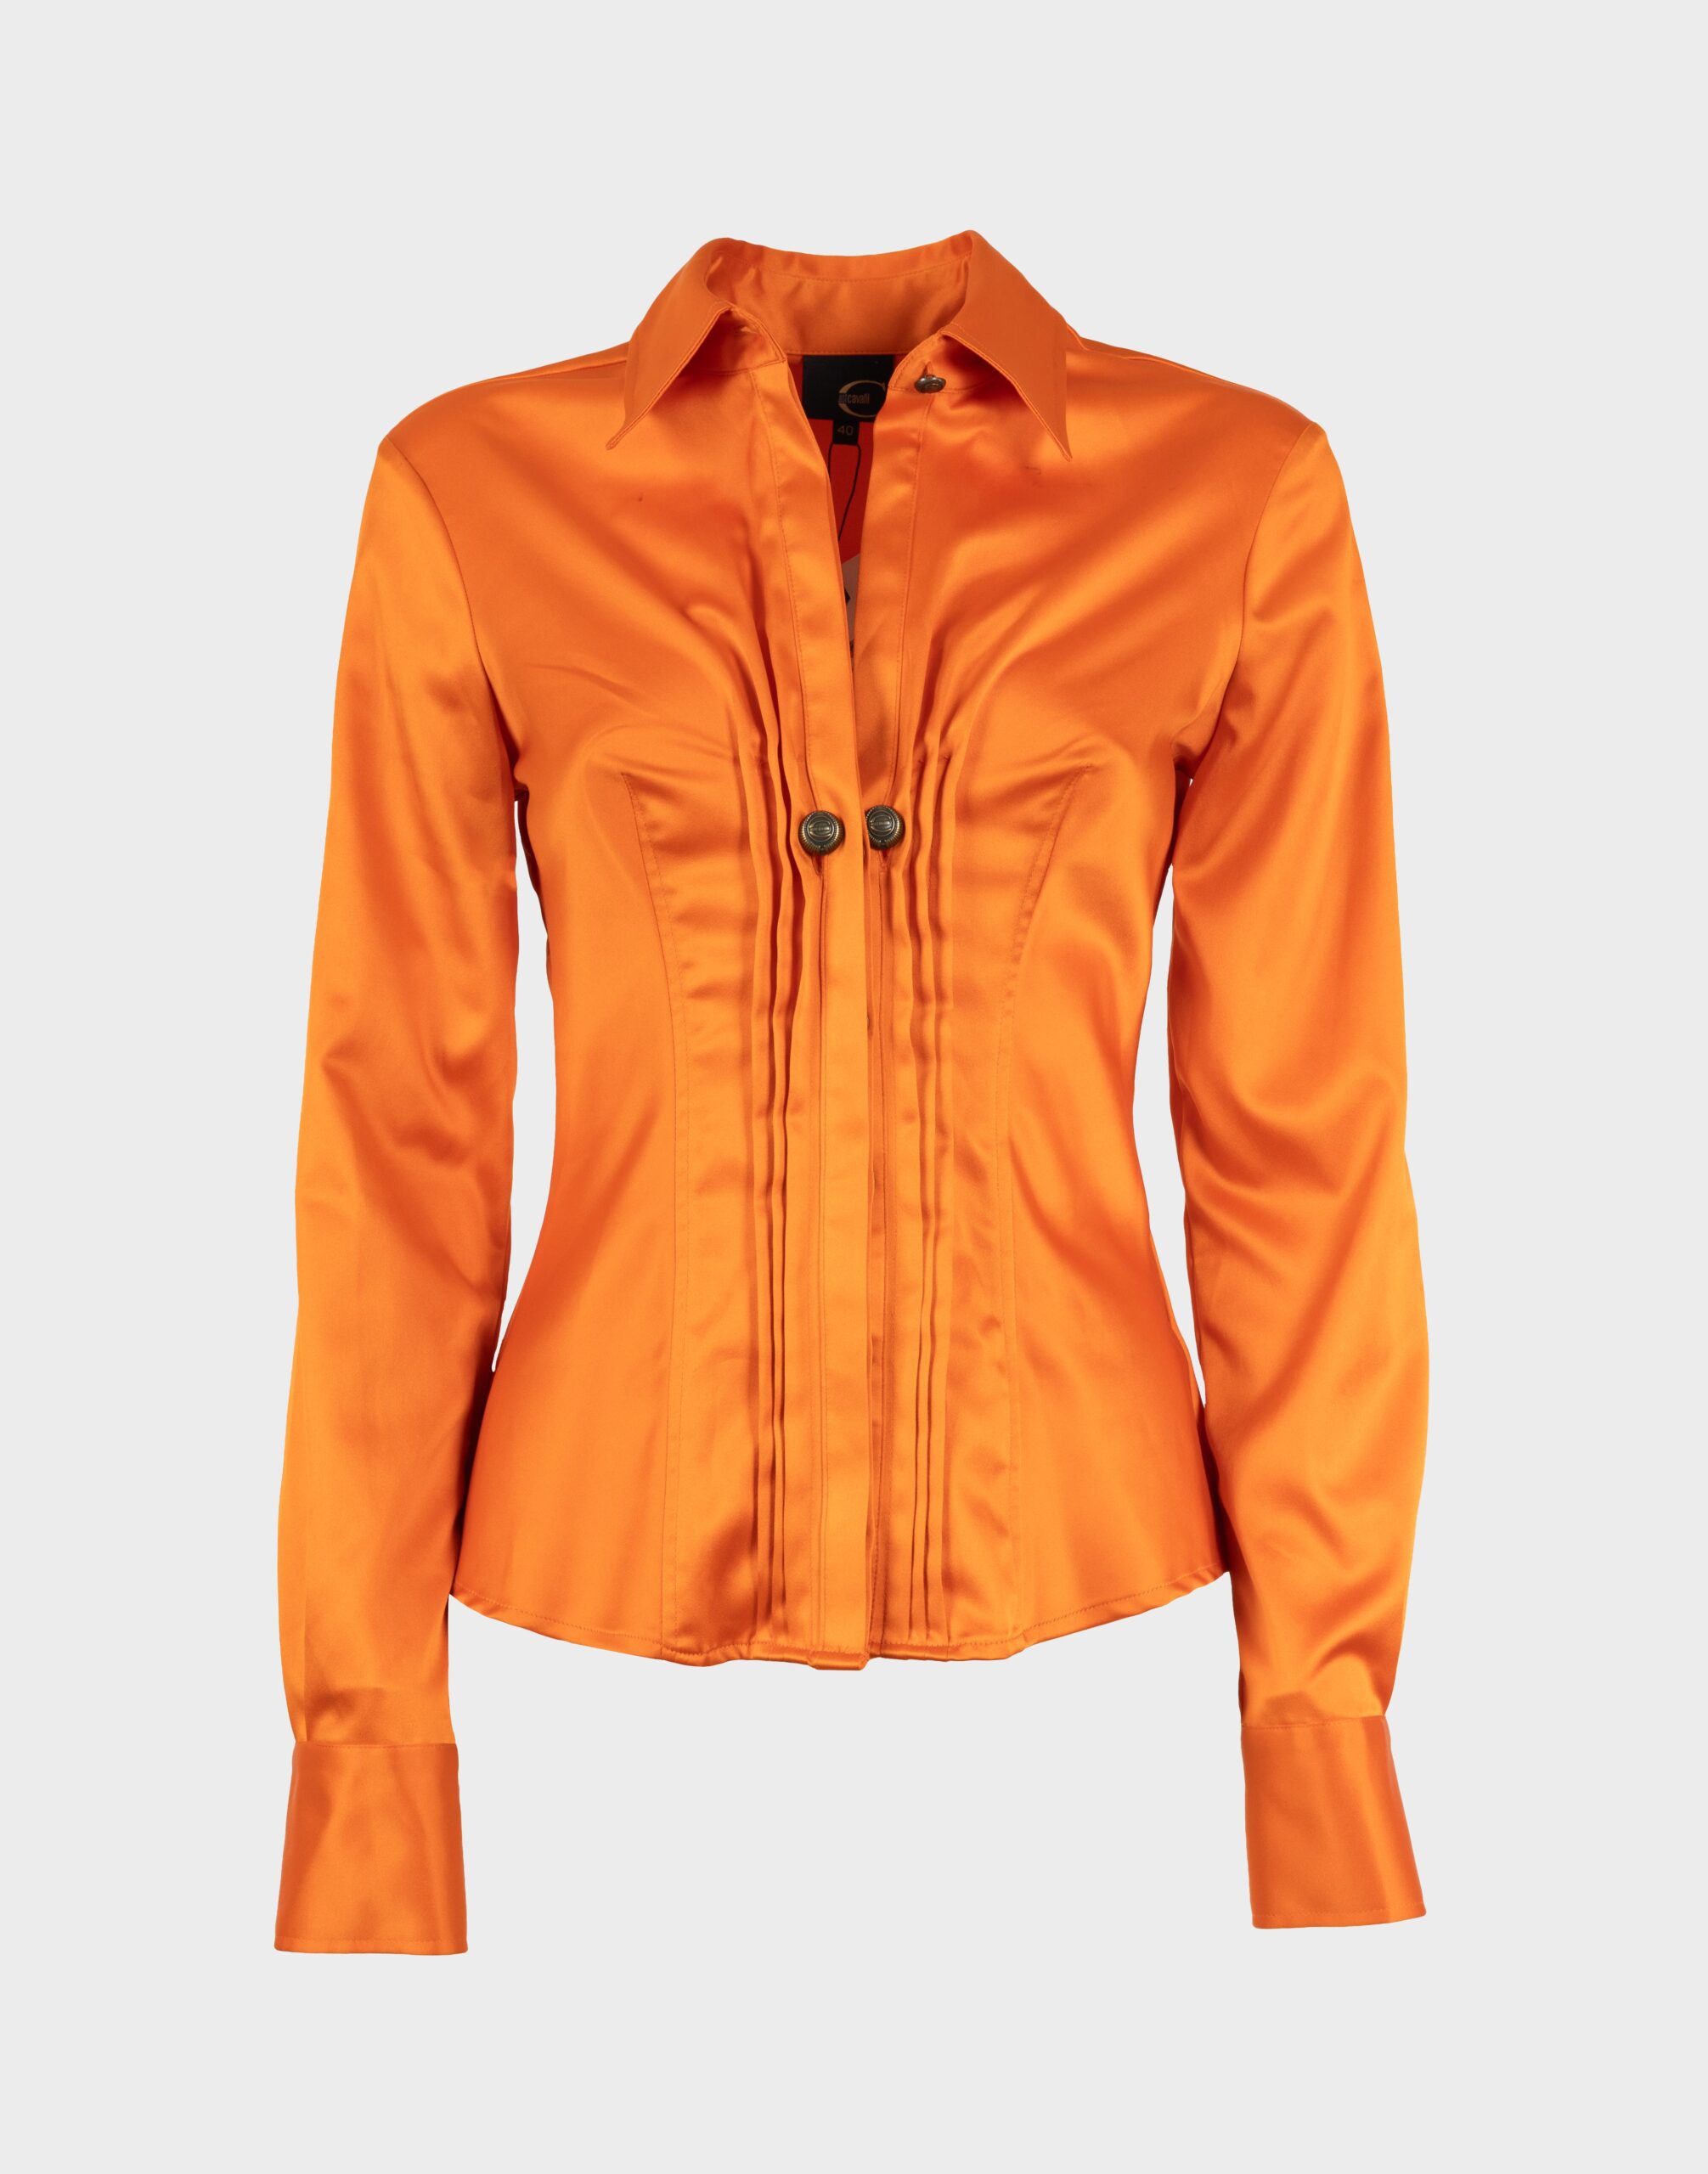 camicia arancione da donna a maniche lunghe con polsino a bracciale, arricciatura sul davanti con gancio logato